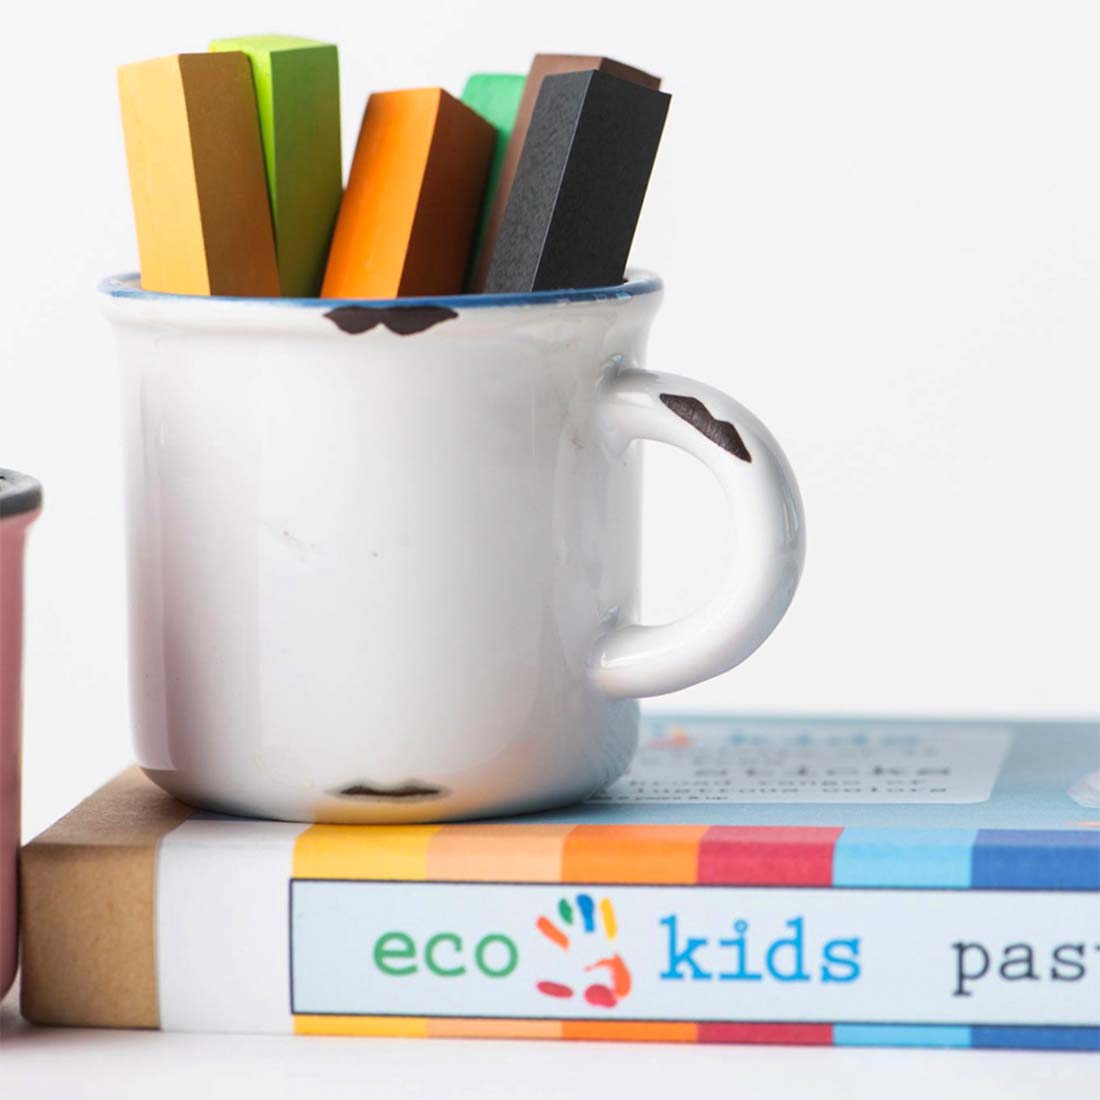 Eco-Kids Pastel Sticks